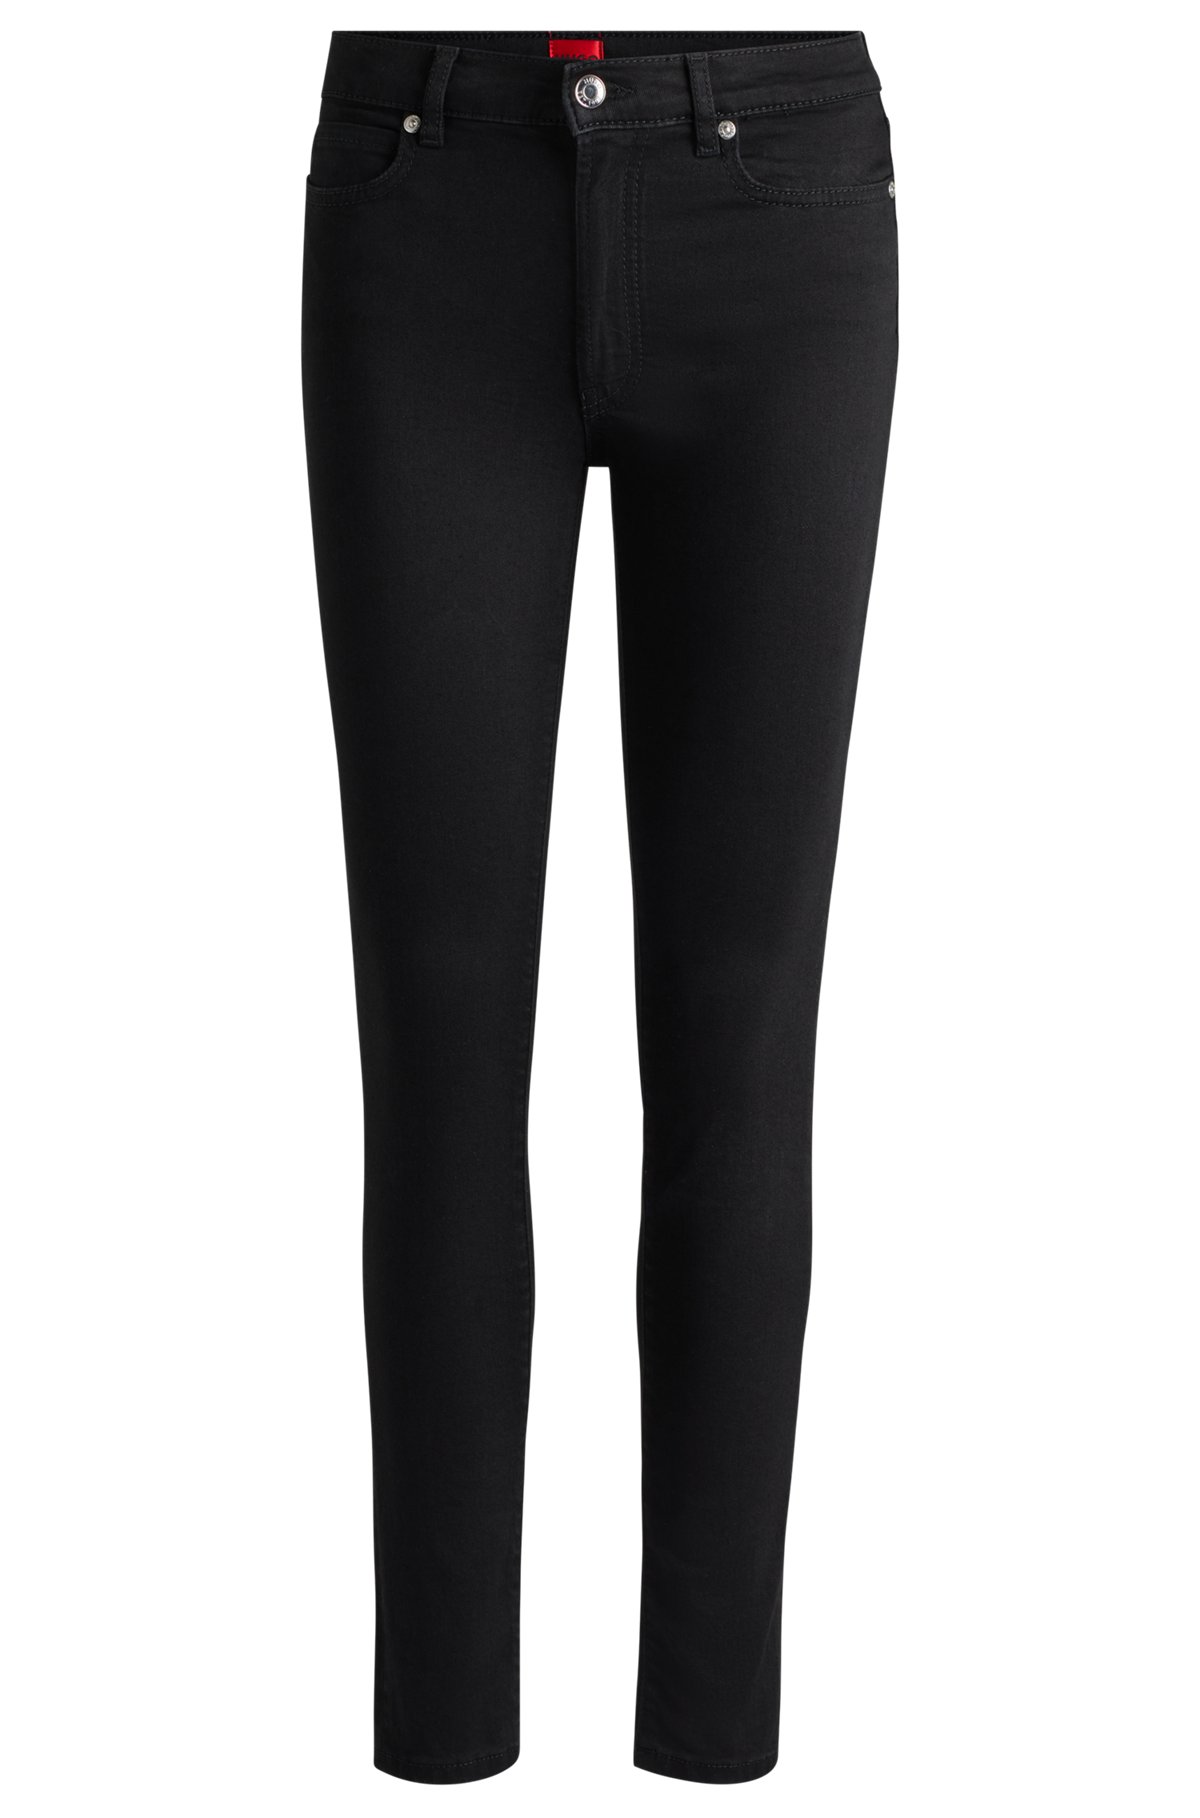 HUGO - Skinny-fit jeans in black stretch denim